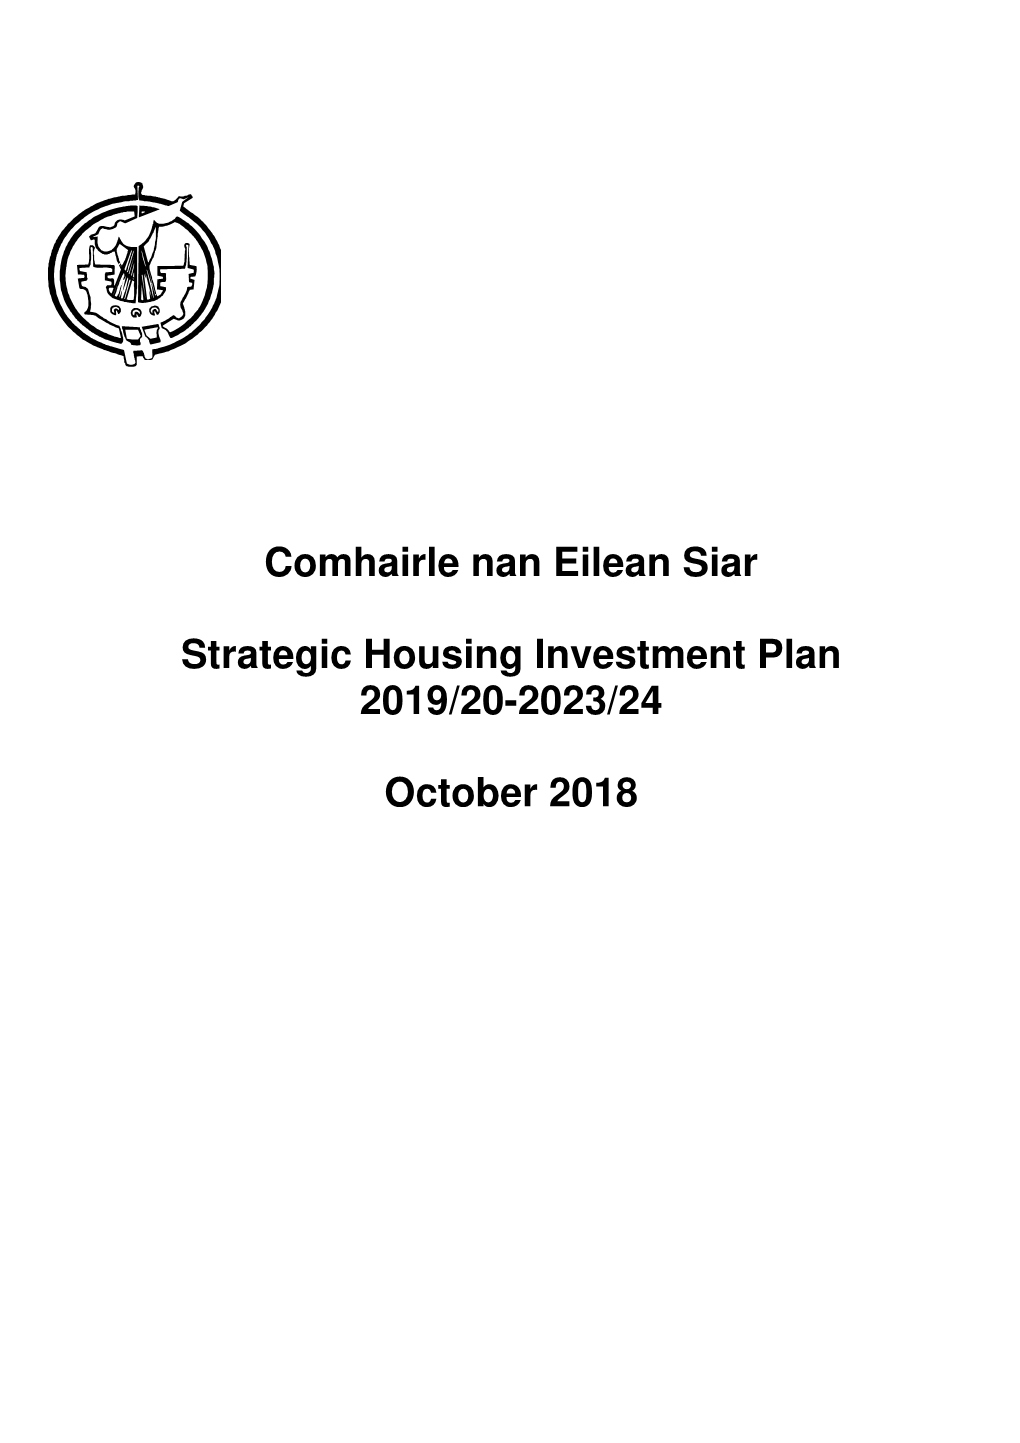 Comhairle Nan Eilean Siar Strategic Housing Investment Plan 2019/20